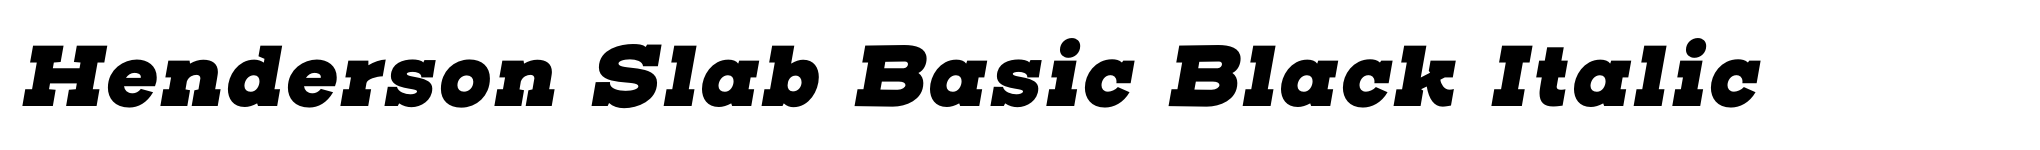 Henderson Slab Basic Black Italic image